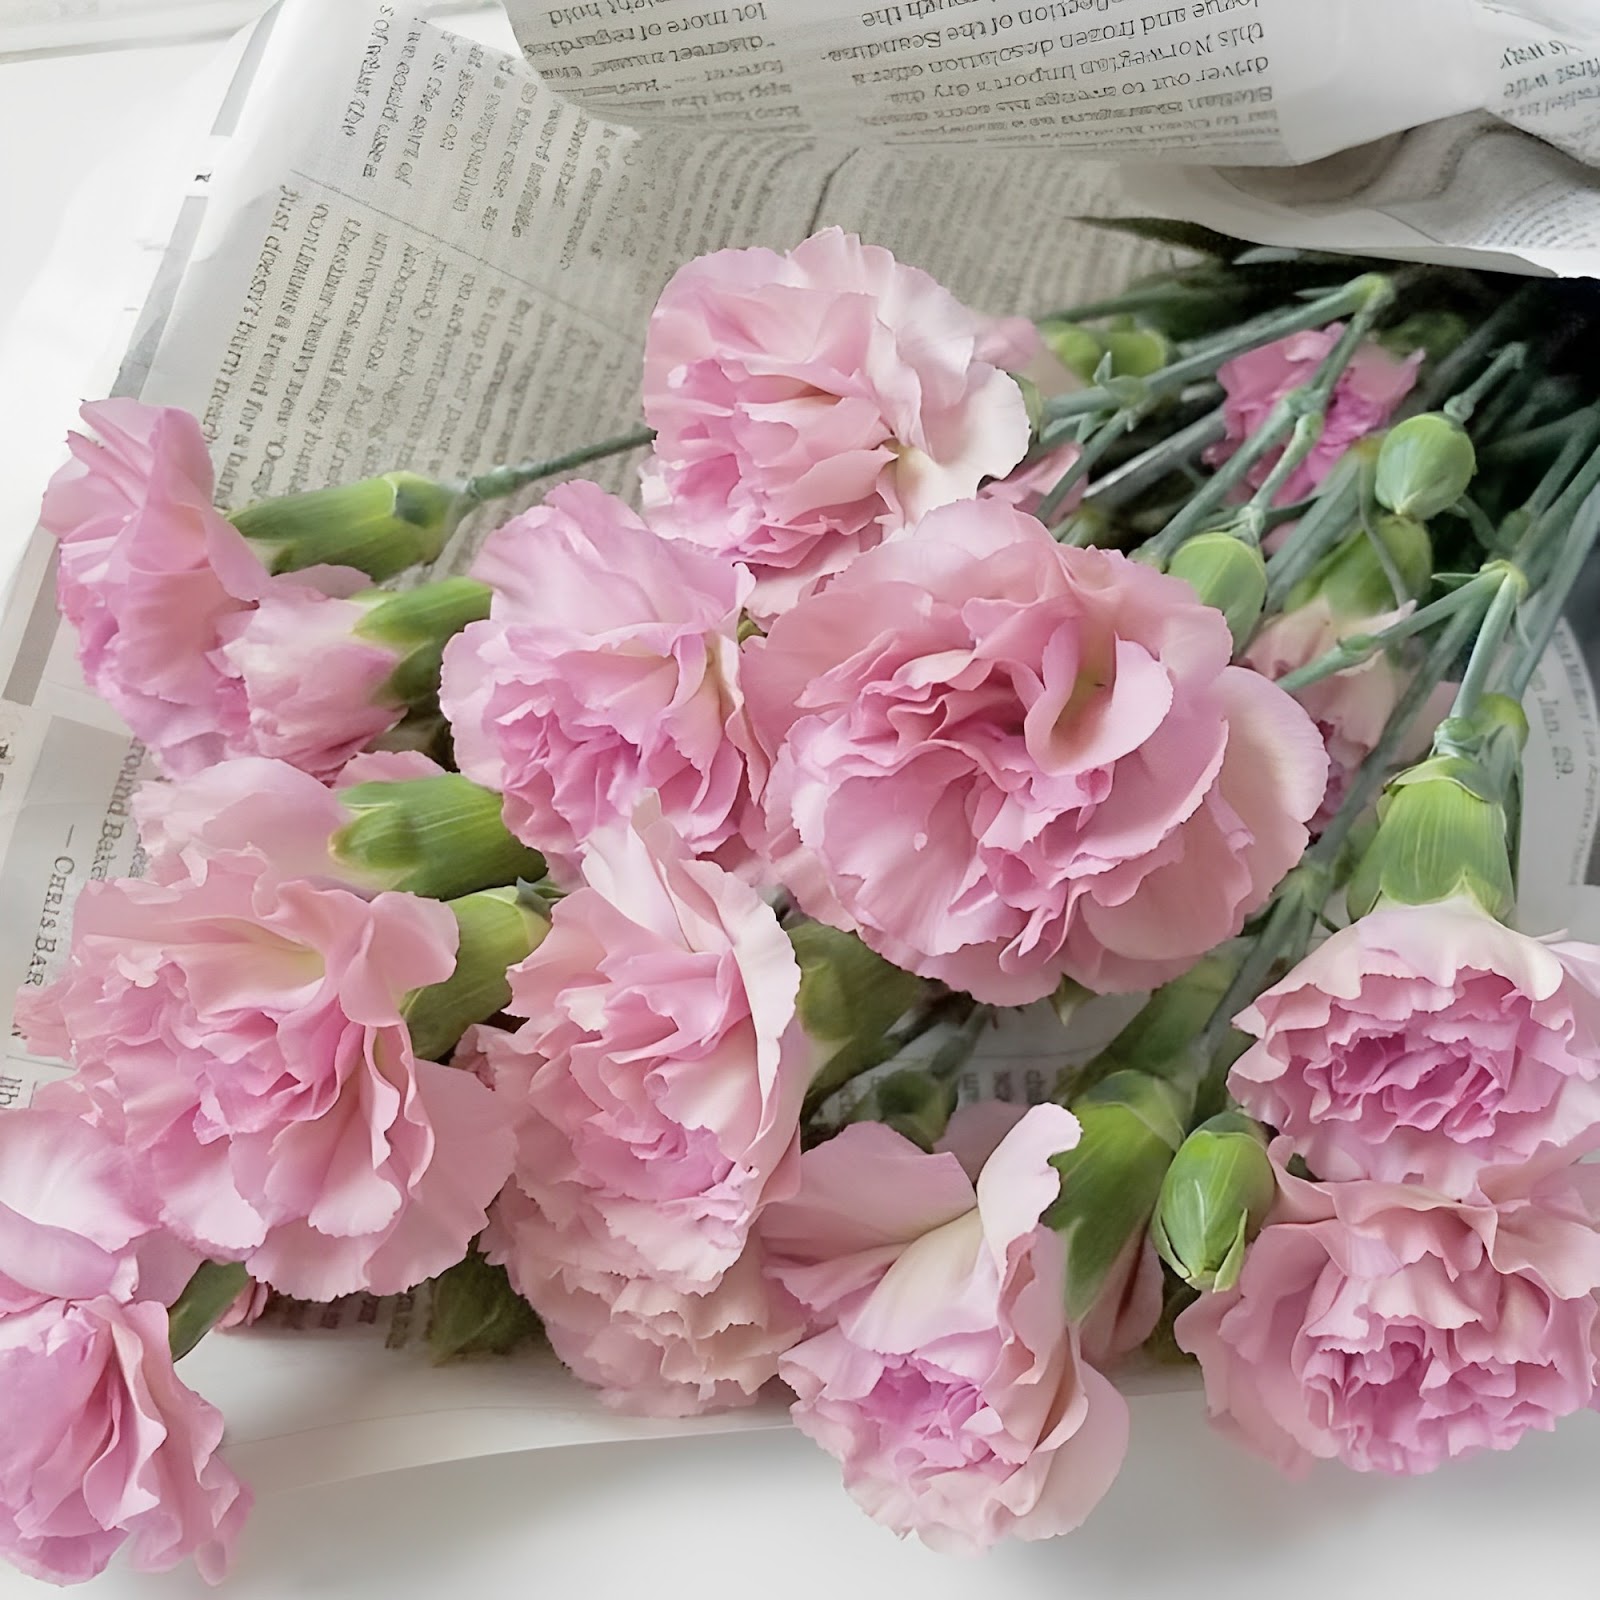 Hoa cẩm chướng biểu hiện tình yêu thương và lòng biết ơn